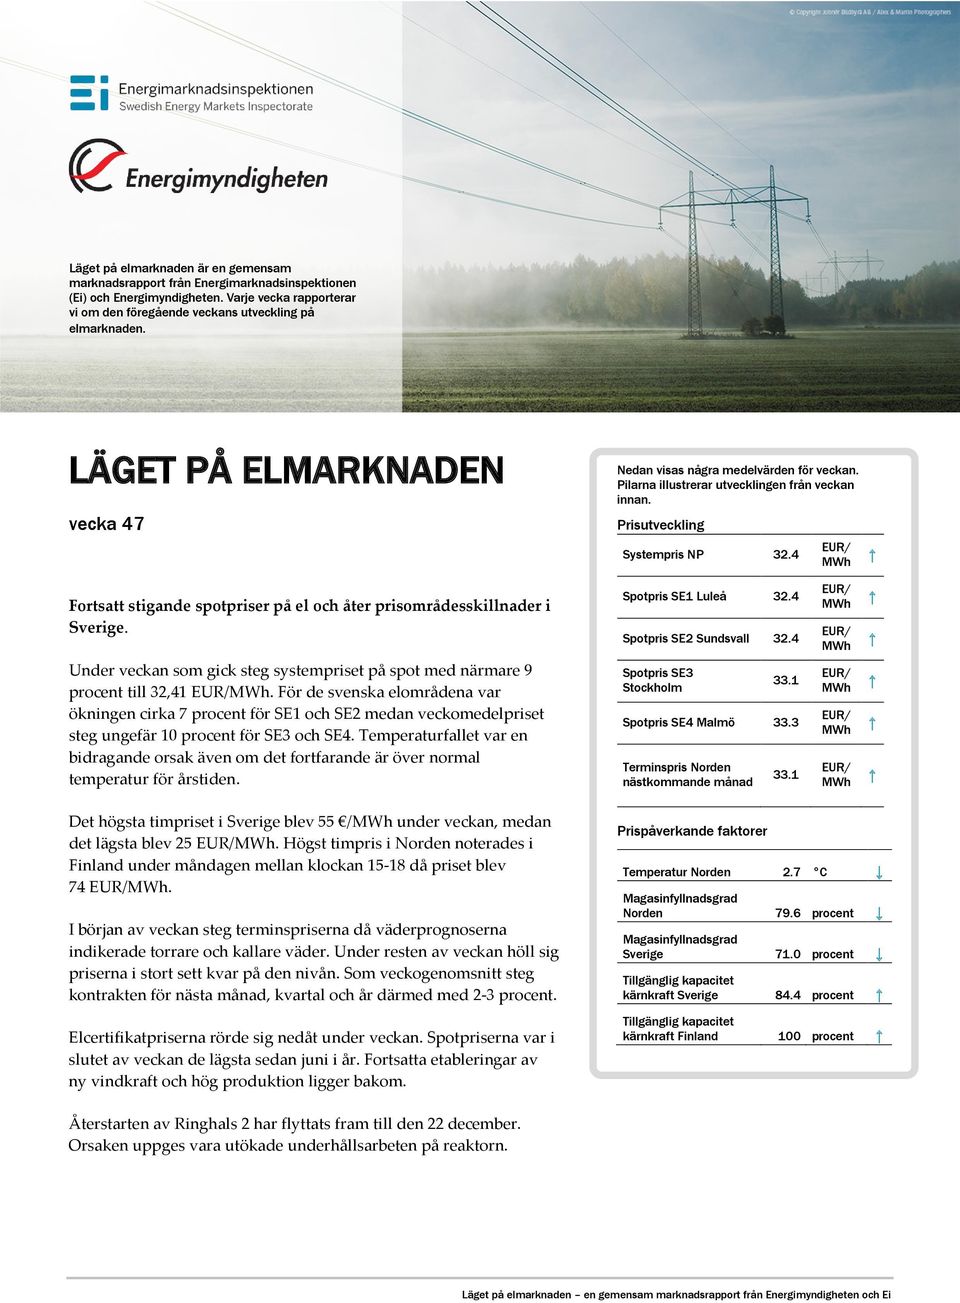 4 EUR/ MWh Fortsatt stigande spotpriser på el och åter prisområdesskillnader i Sverige. Spotpris SE1 Luleå 32.4 Spotpris SE2 Sundsvall 32.